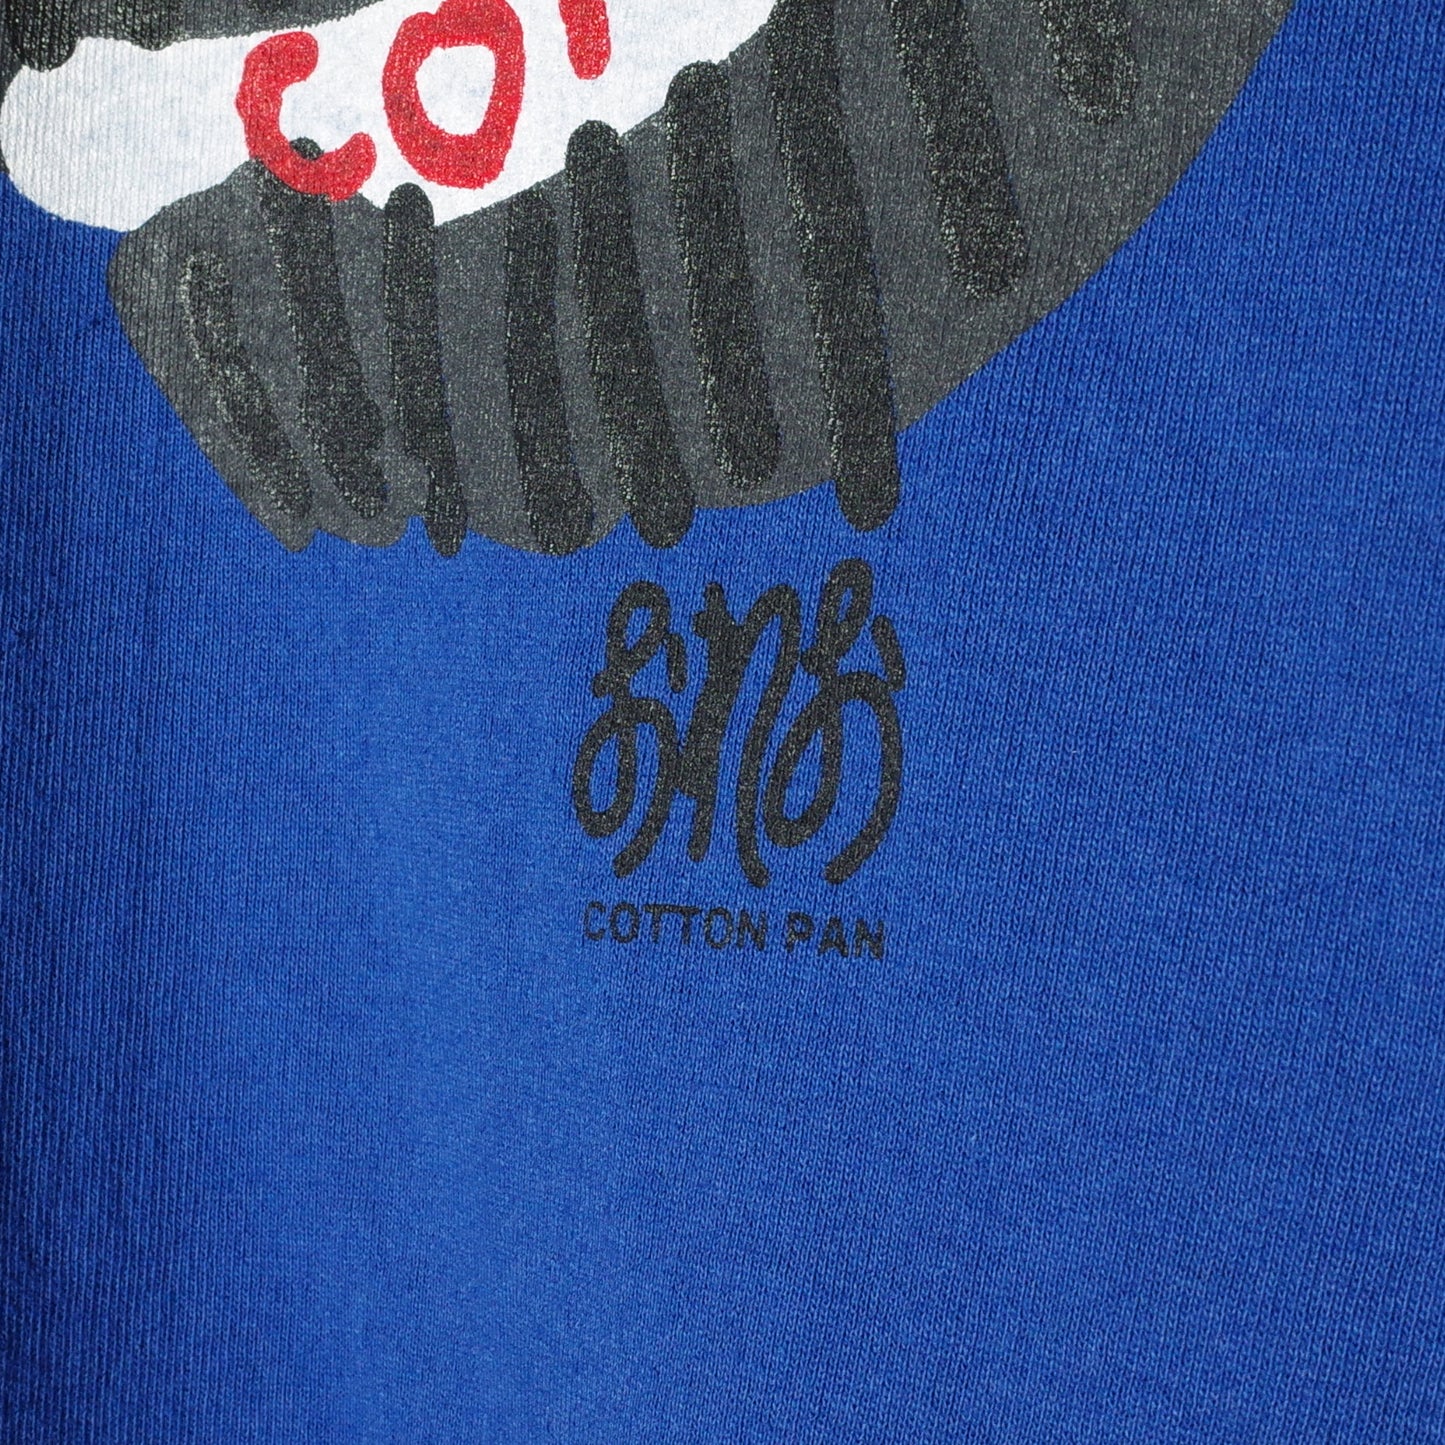 COTTON PAN "OREO 03" / コットンパン "オレオ03"